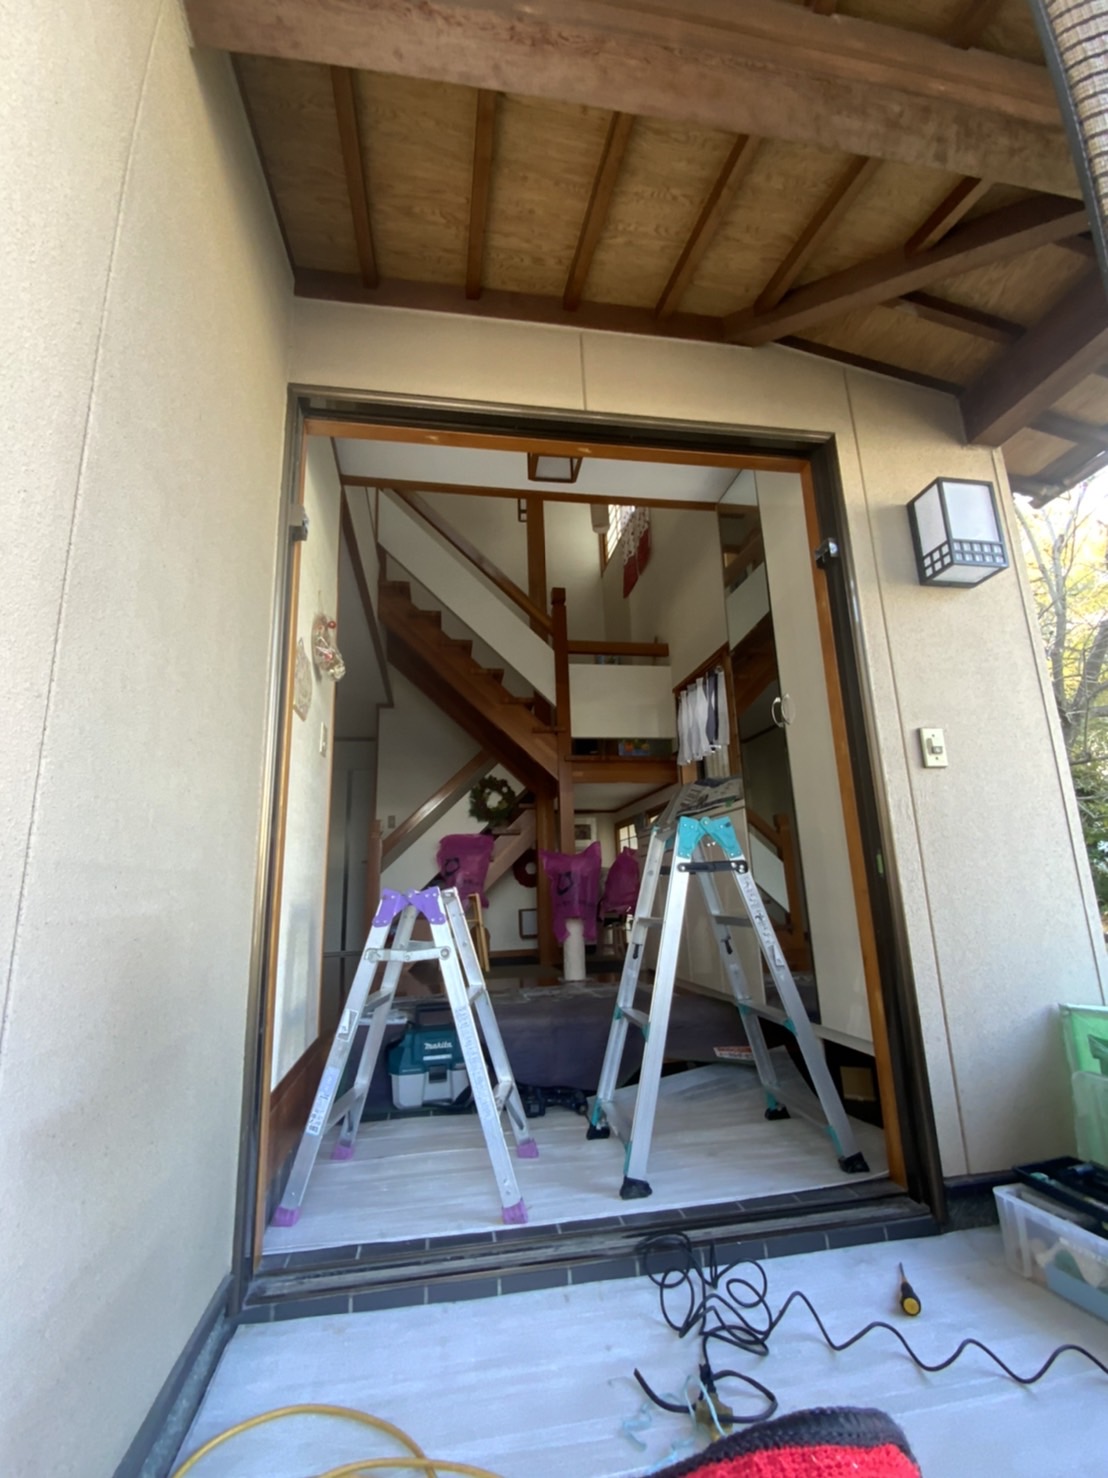 愛知県大府市の戸建住宅にて、玄関引戸交換工事を行いました。（YKKドアリモ）【窓香房】